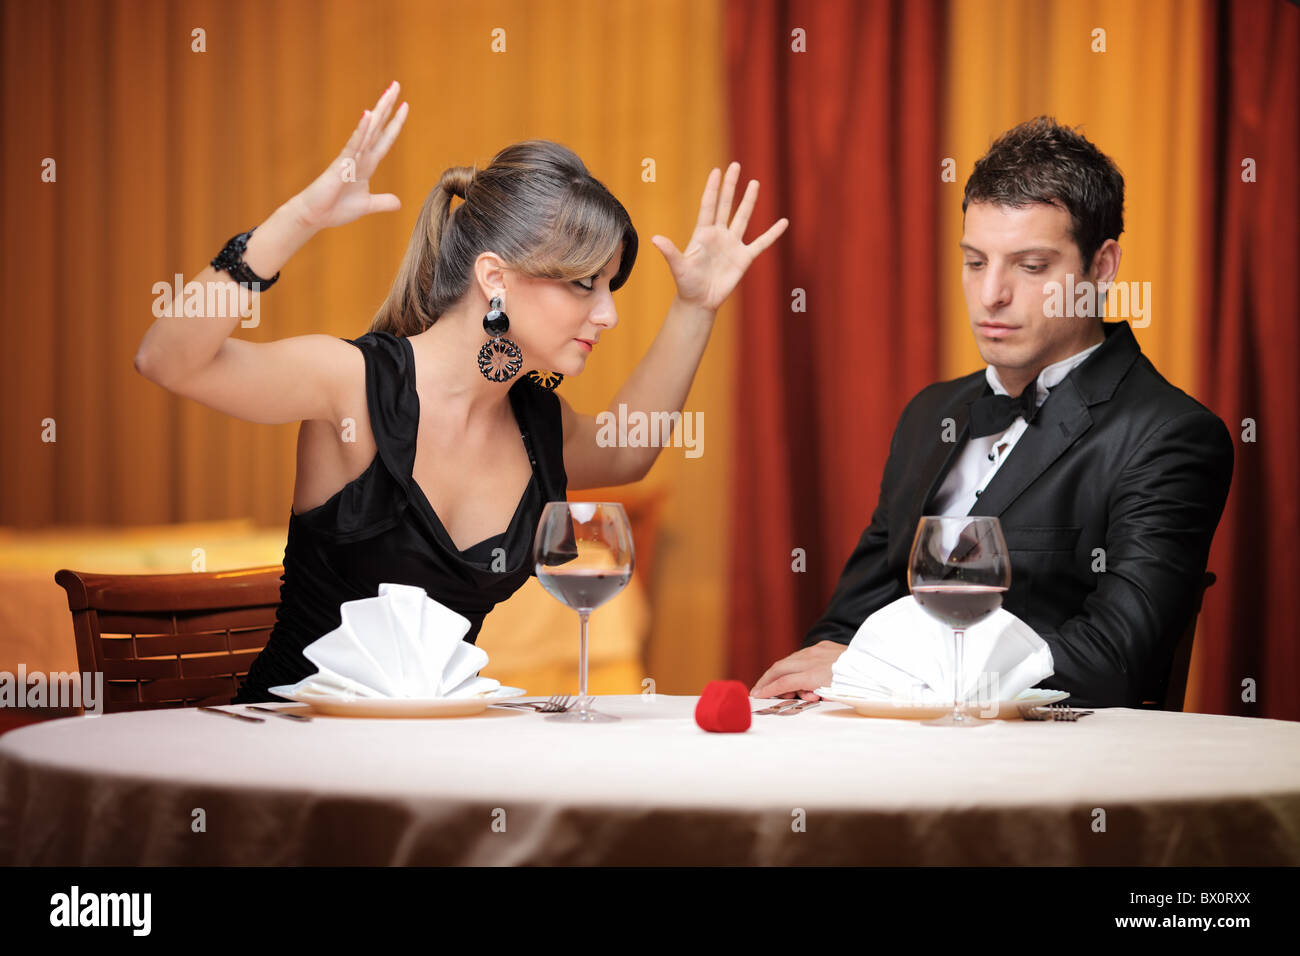 Young couple having an argument dans un restaurant Banque D'Images